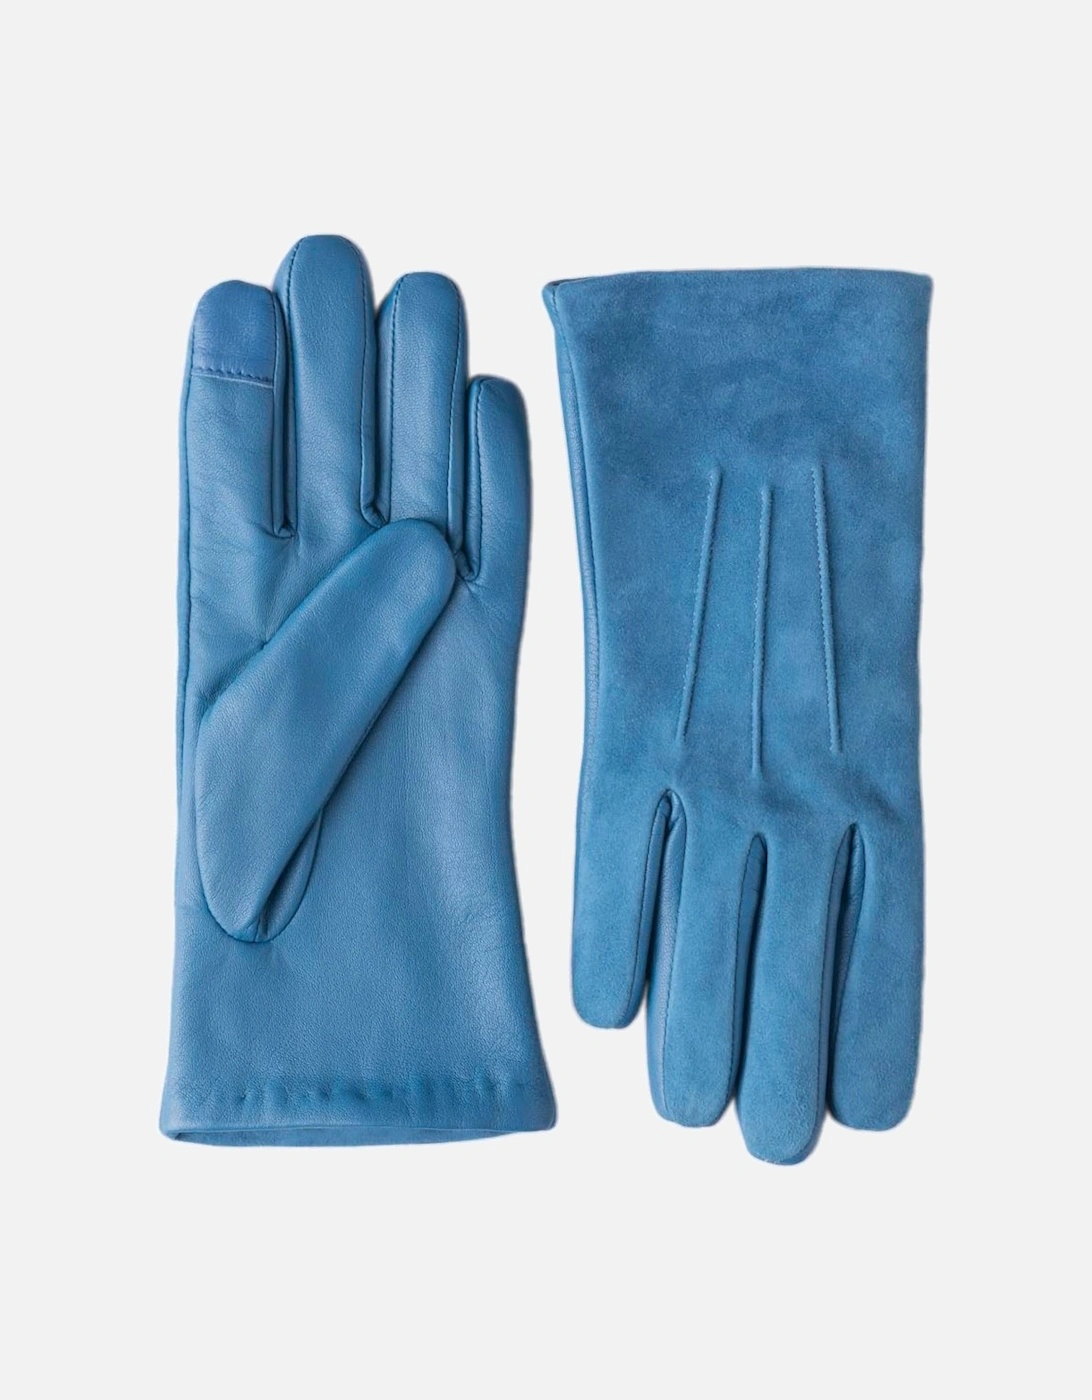 Hesket Suede Gloves, 5 of 4